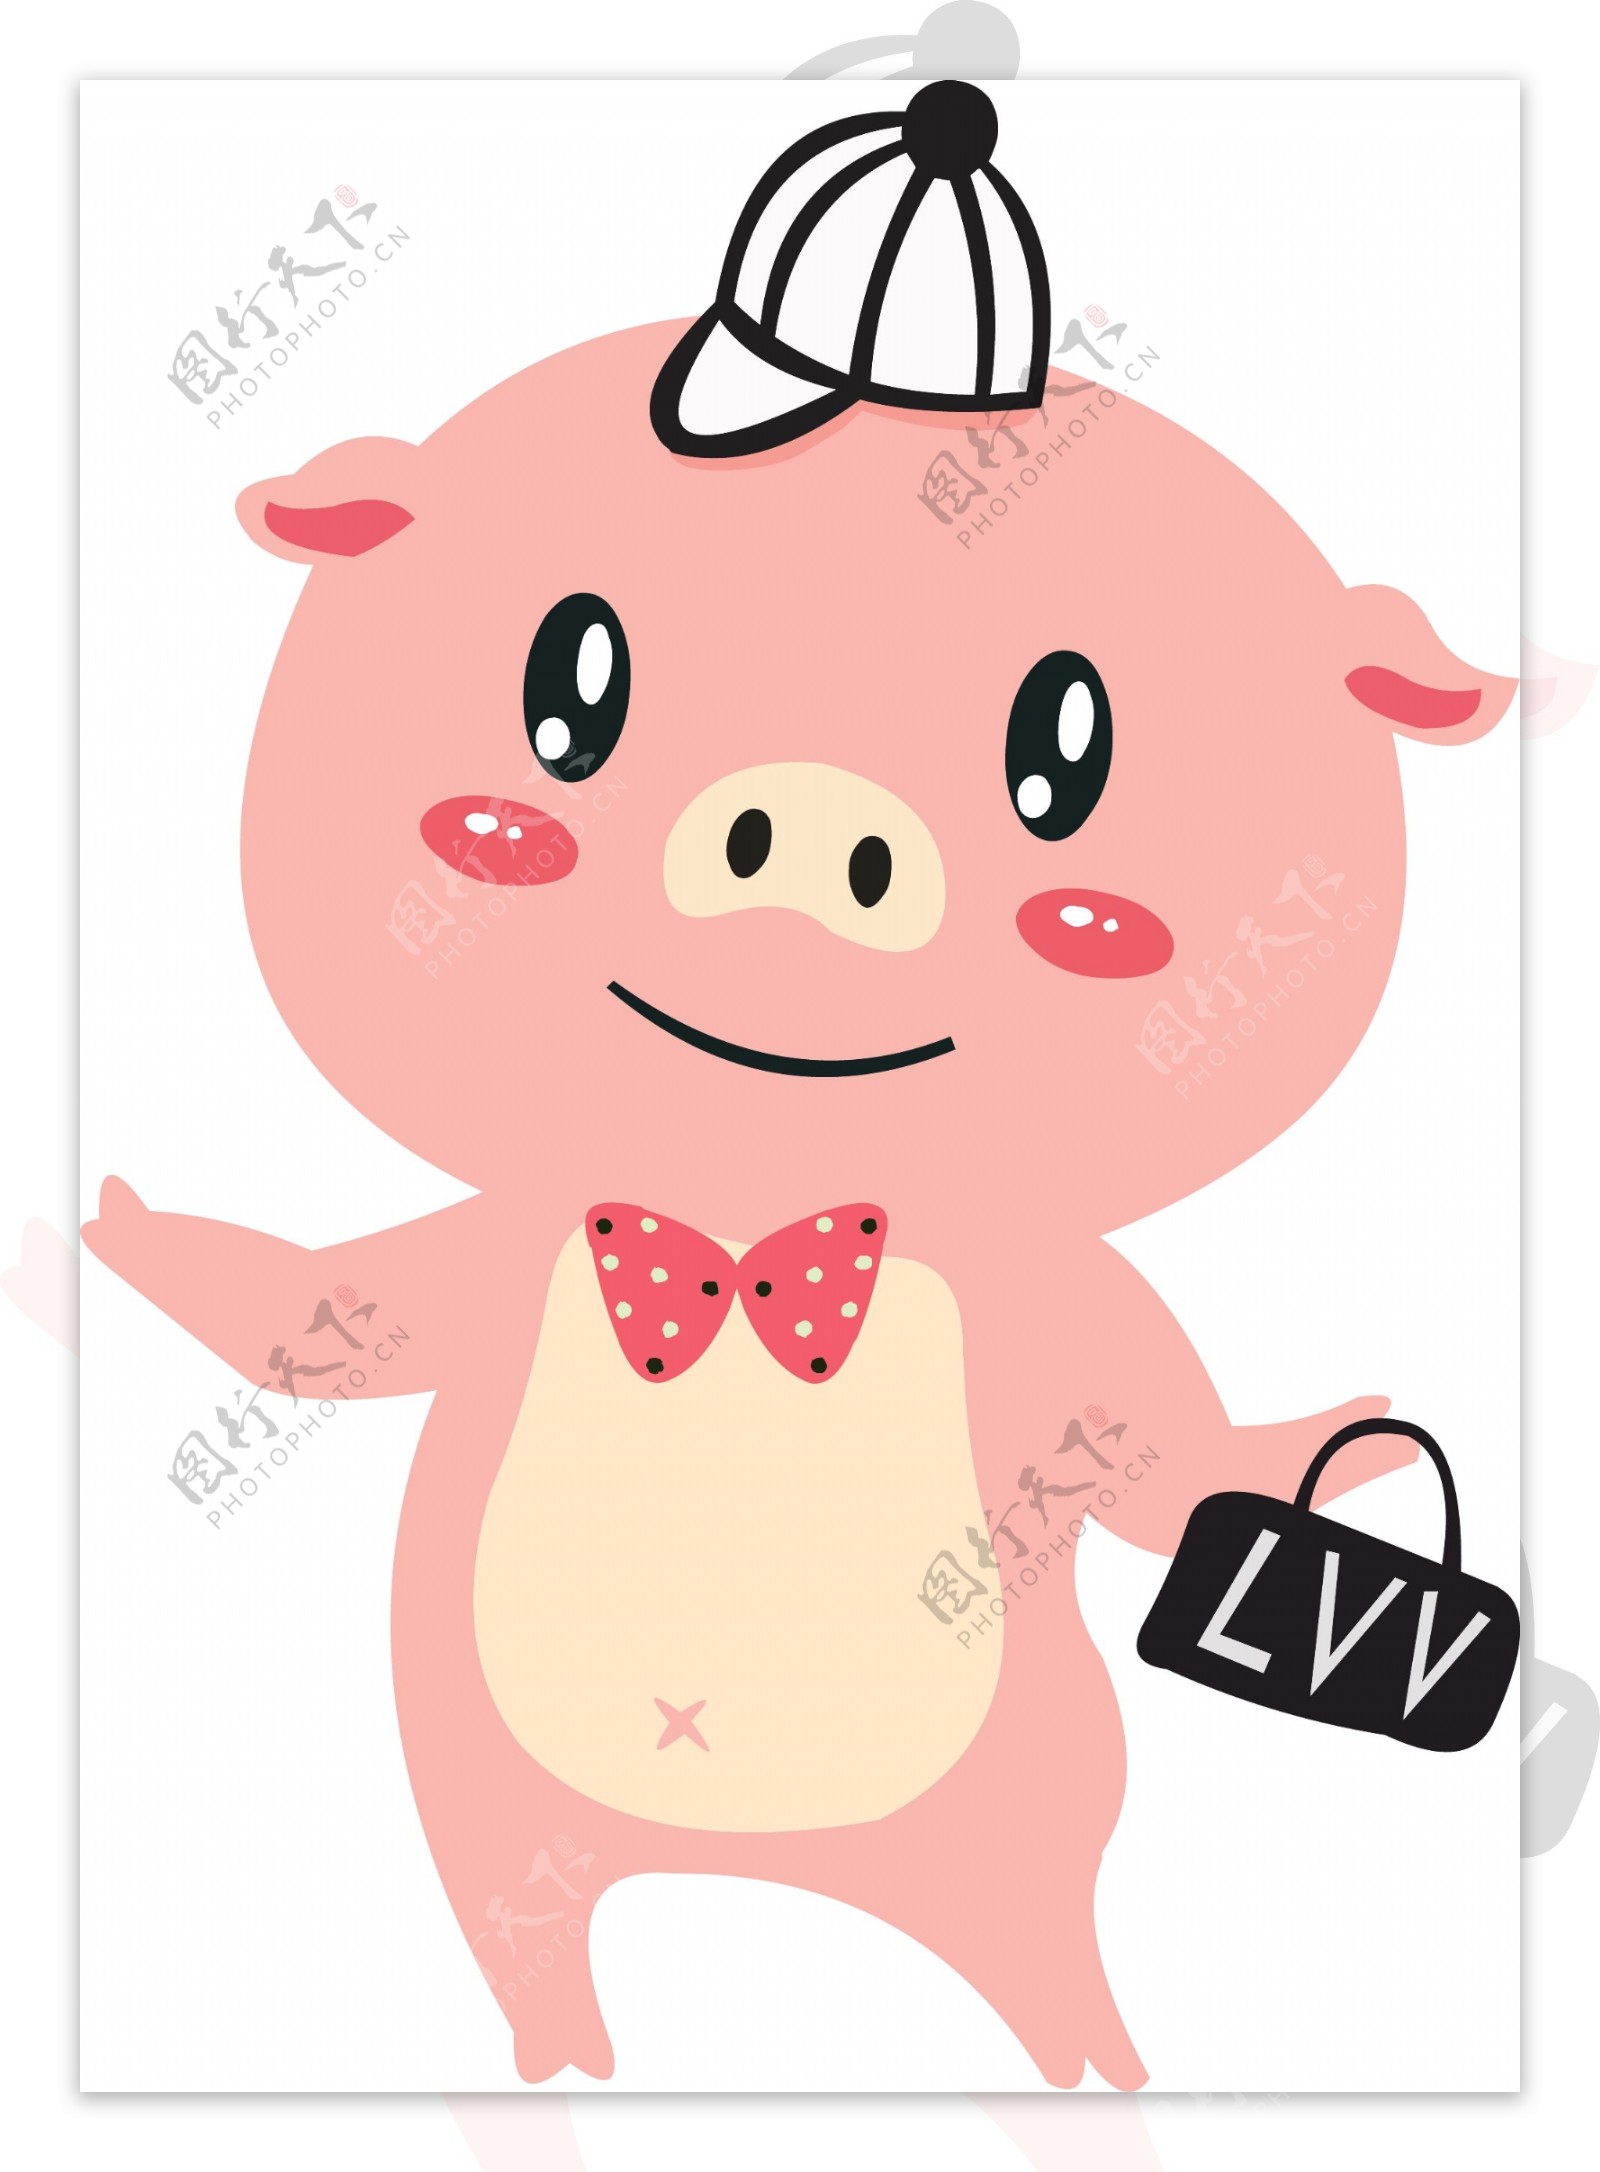 手绘卡通可爱小猪形象可商用